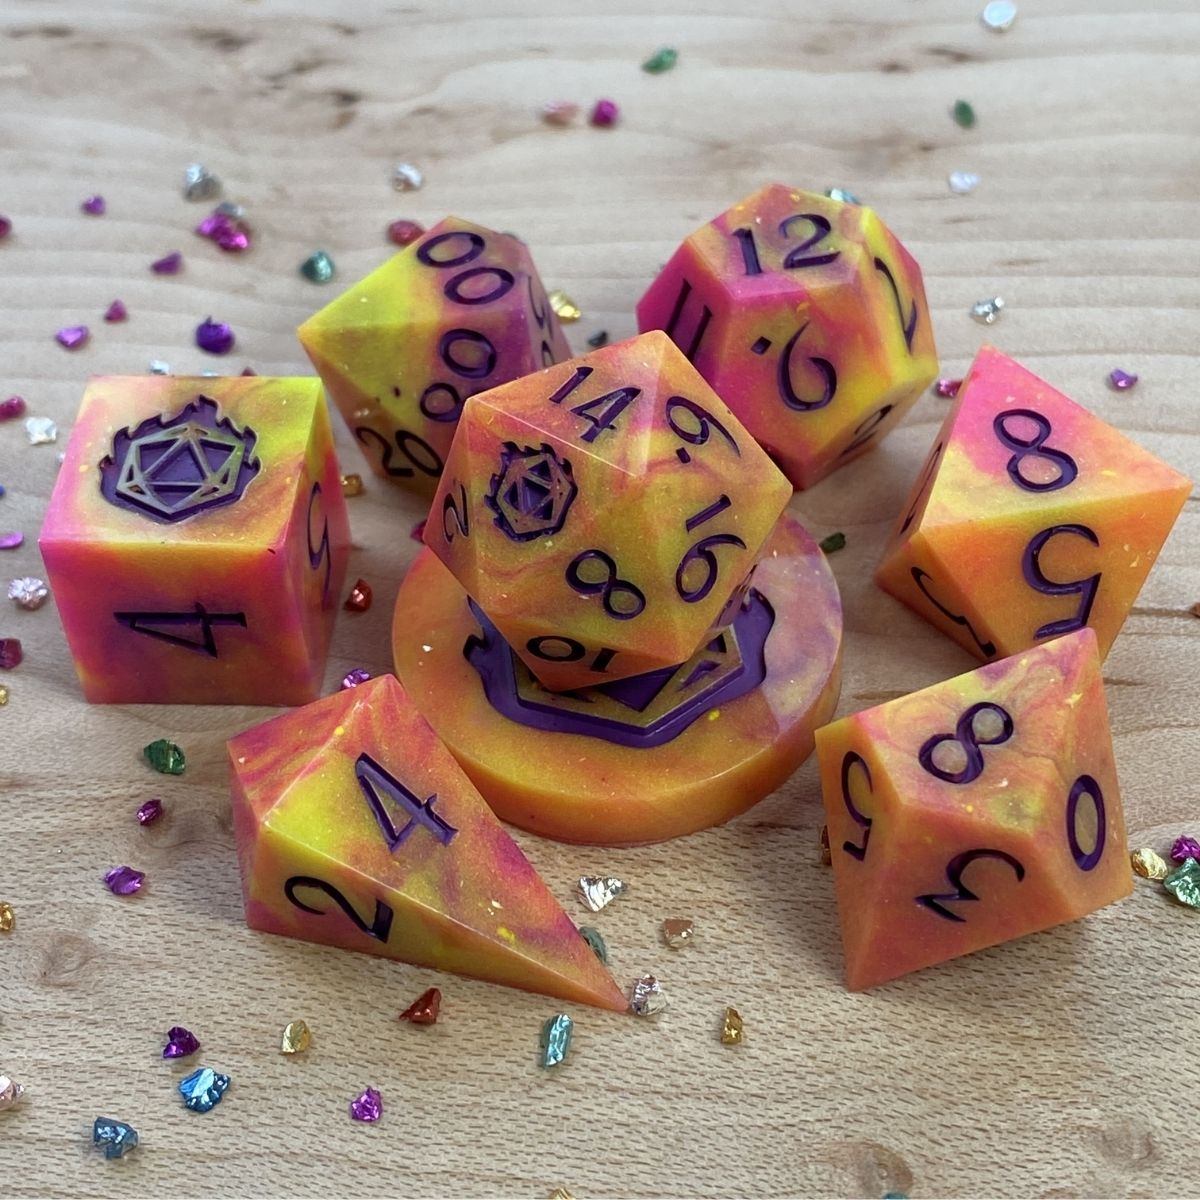 Colorful set of D&D dice